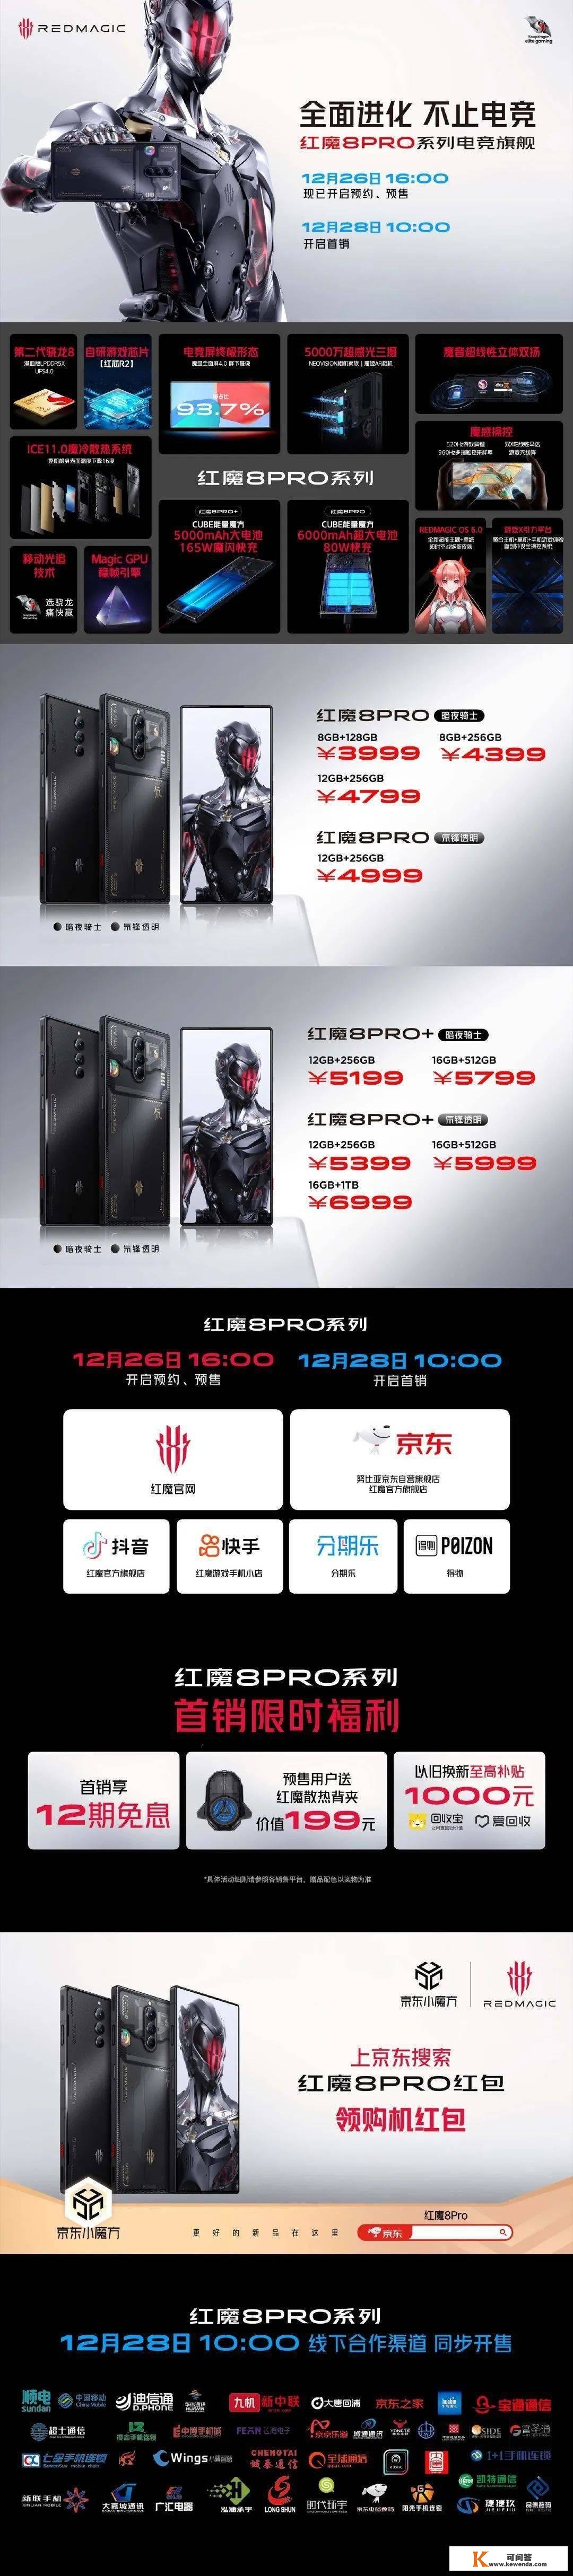 骁龙 8 Gen 2+ 屏下前摄 + 硬朗外型，红魔 8 Pro 游戏手机发布，售价 3999 元起